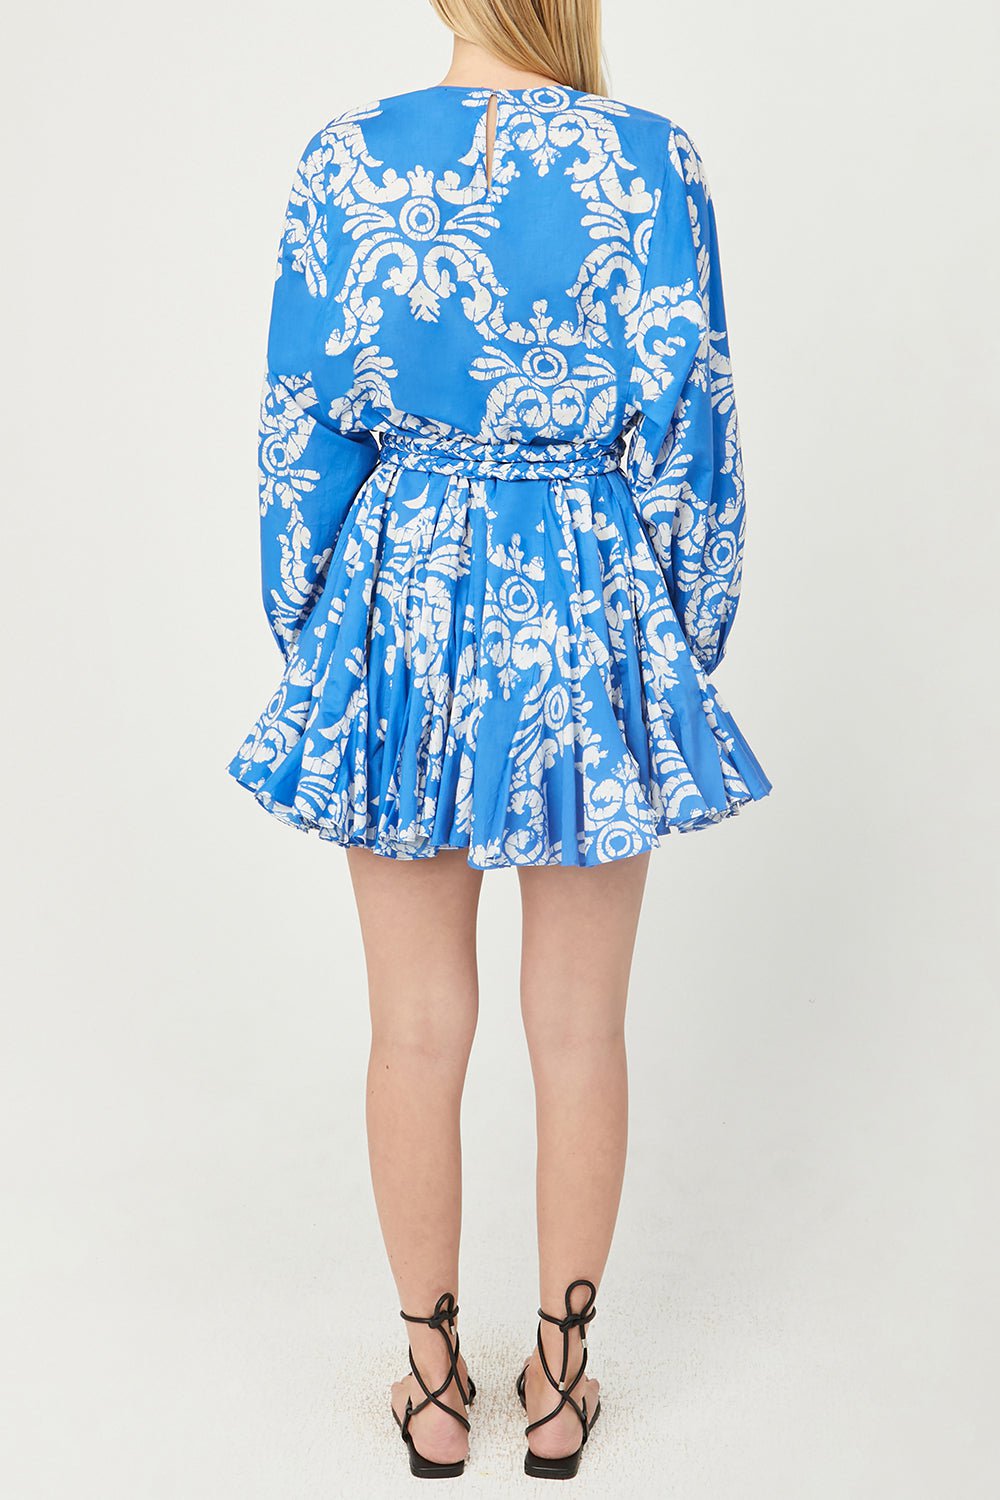 Ella Dress - Batik Grid CLOTHINGDRESSCASUAL RHODE   